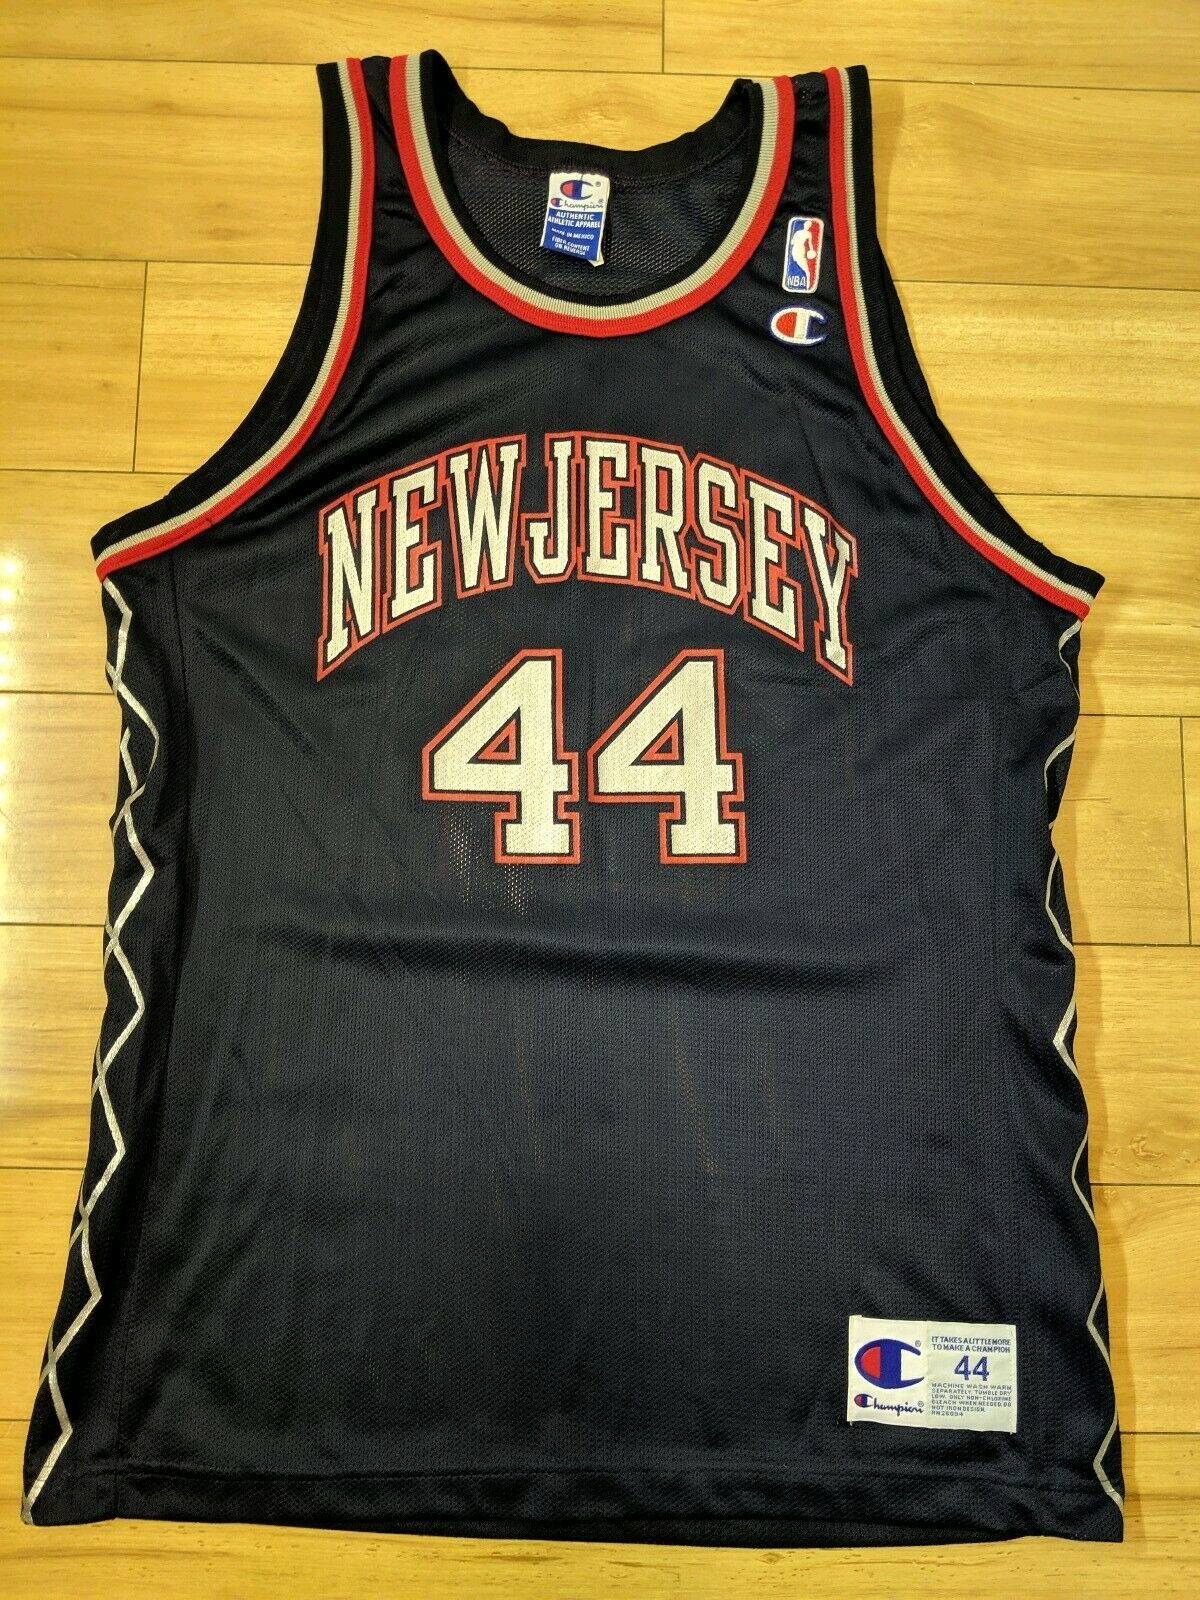 New Jersey Nets Vintage Apparel & Jerseys